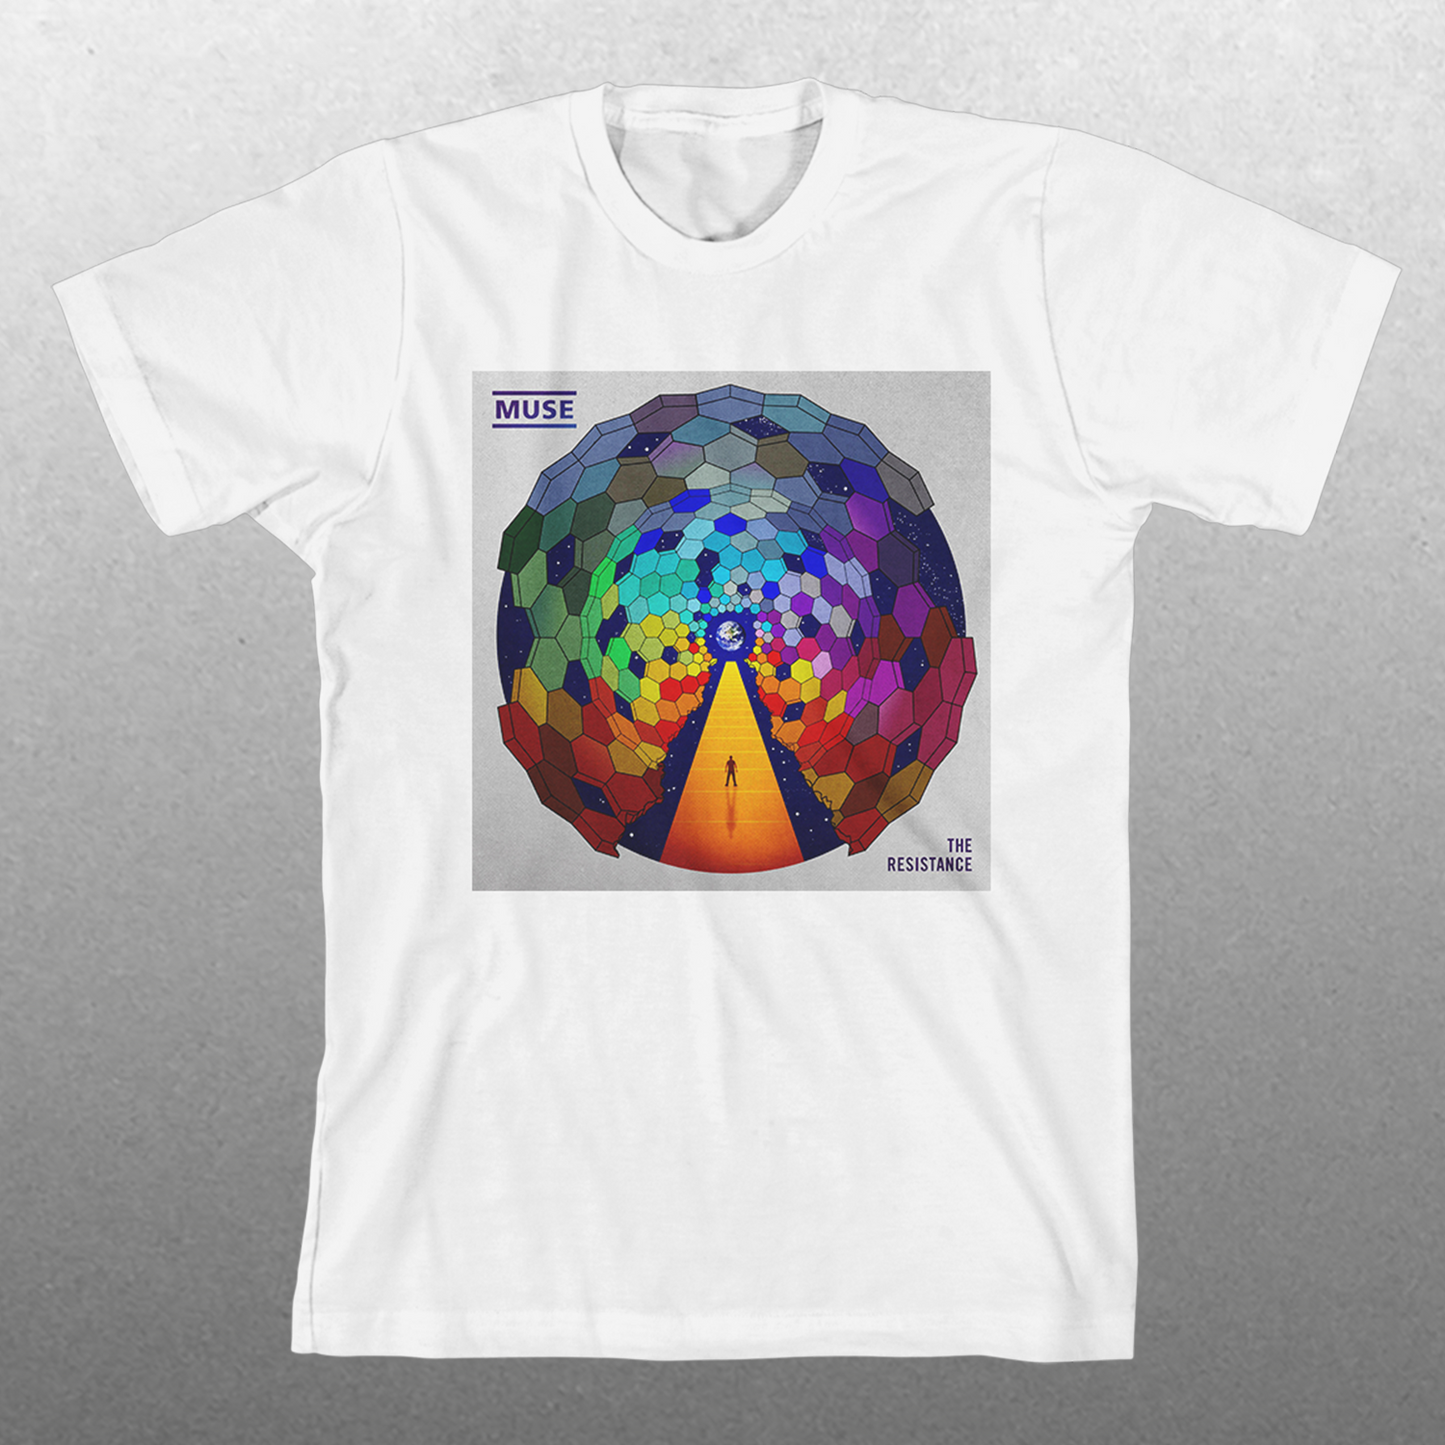 The Resistance Album Art T-Shirt